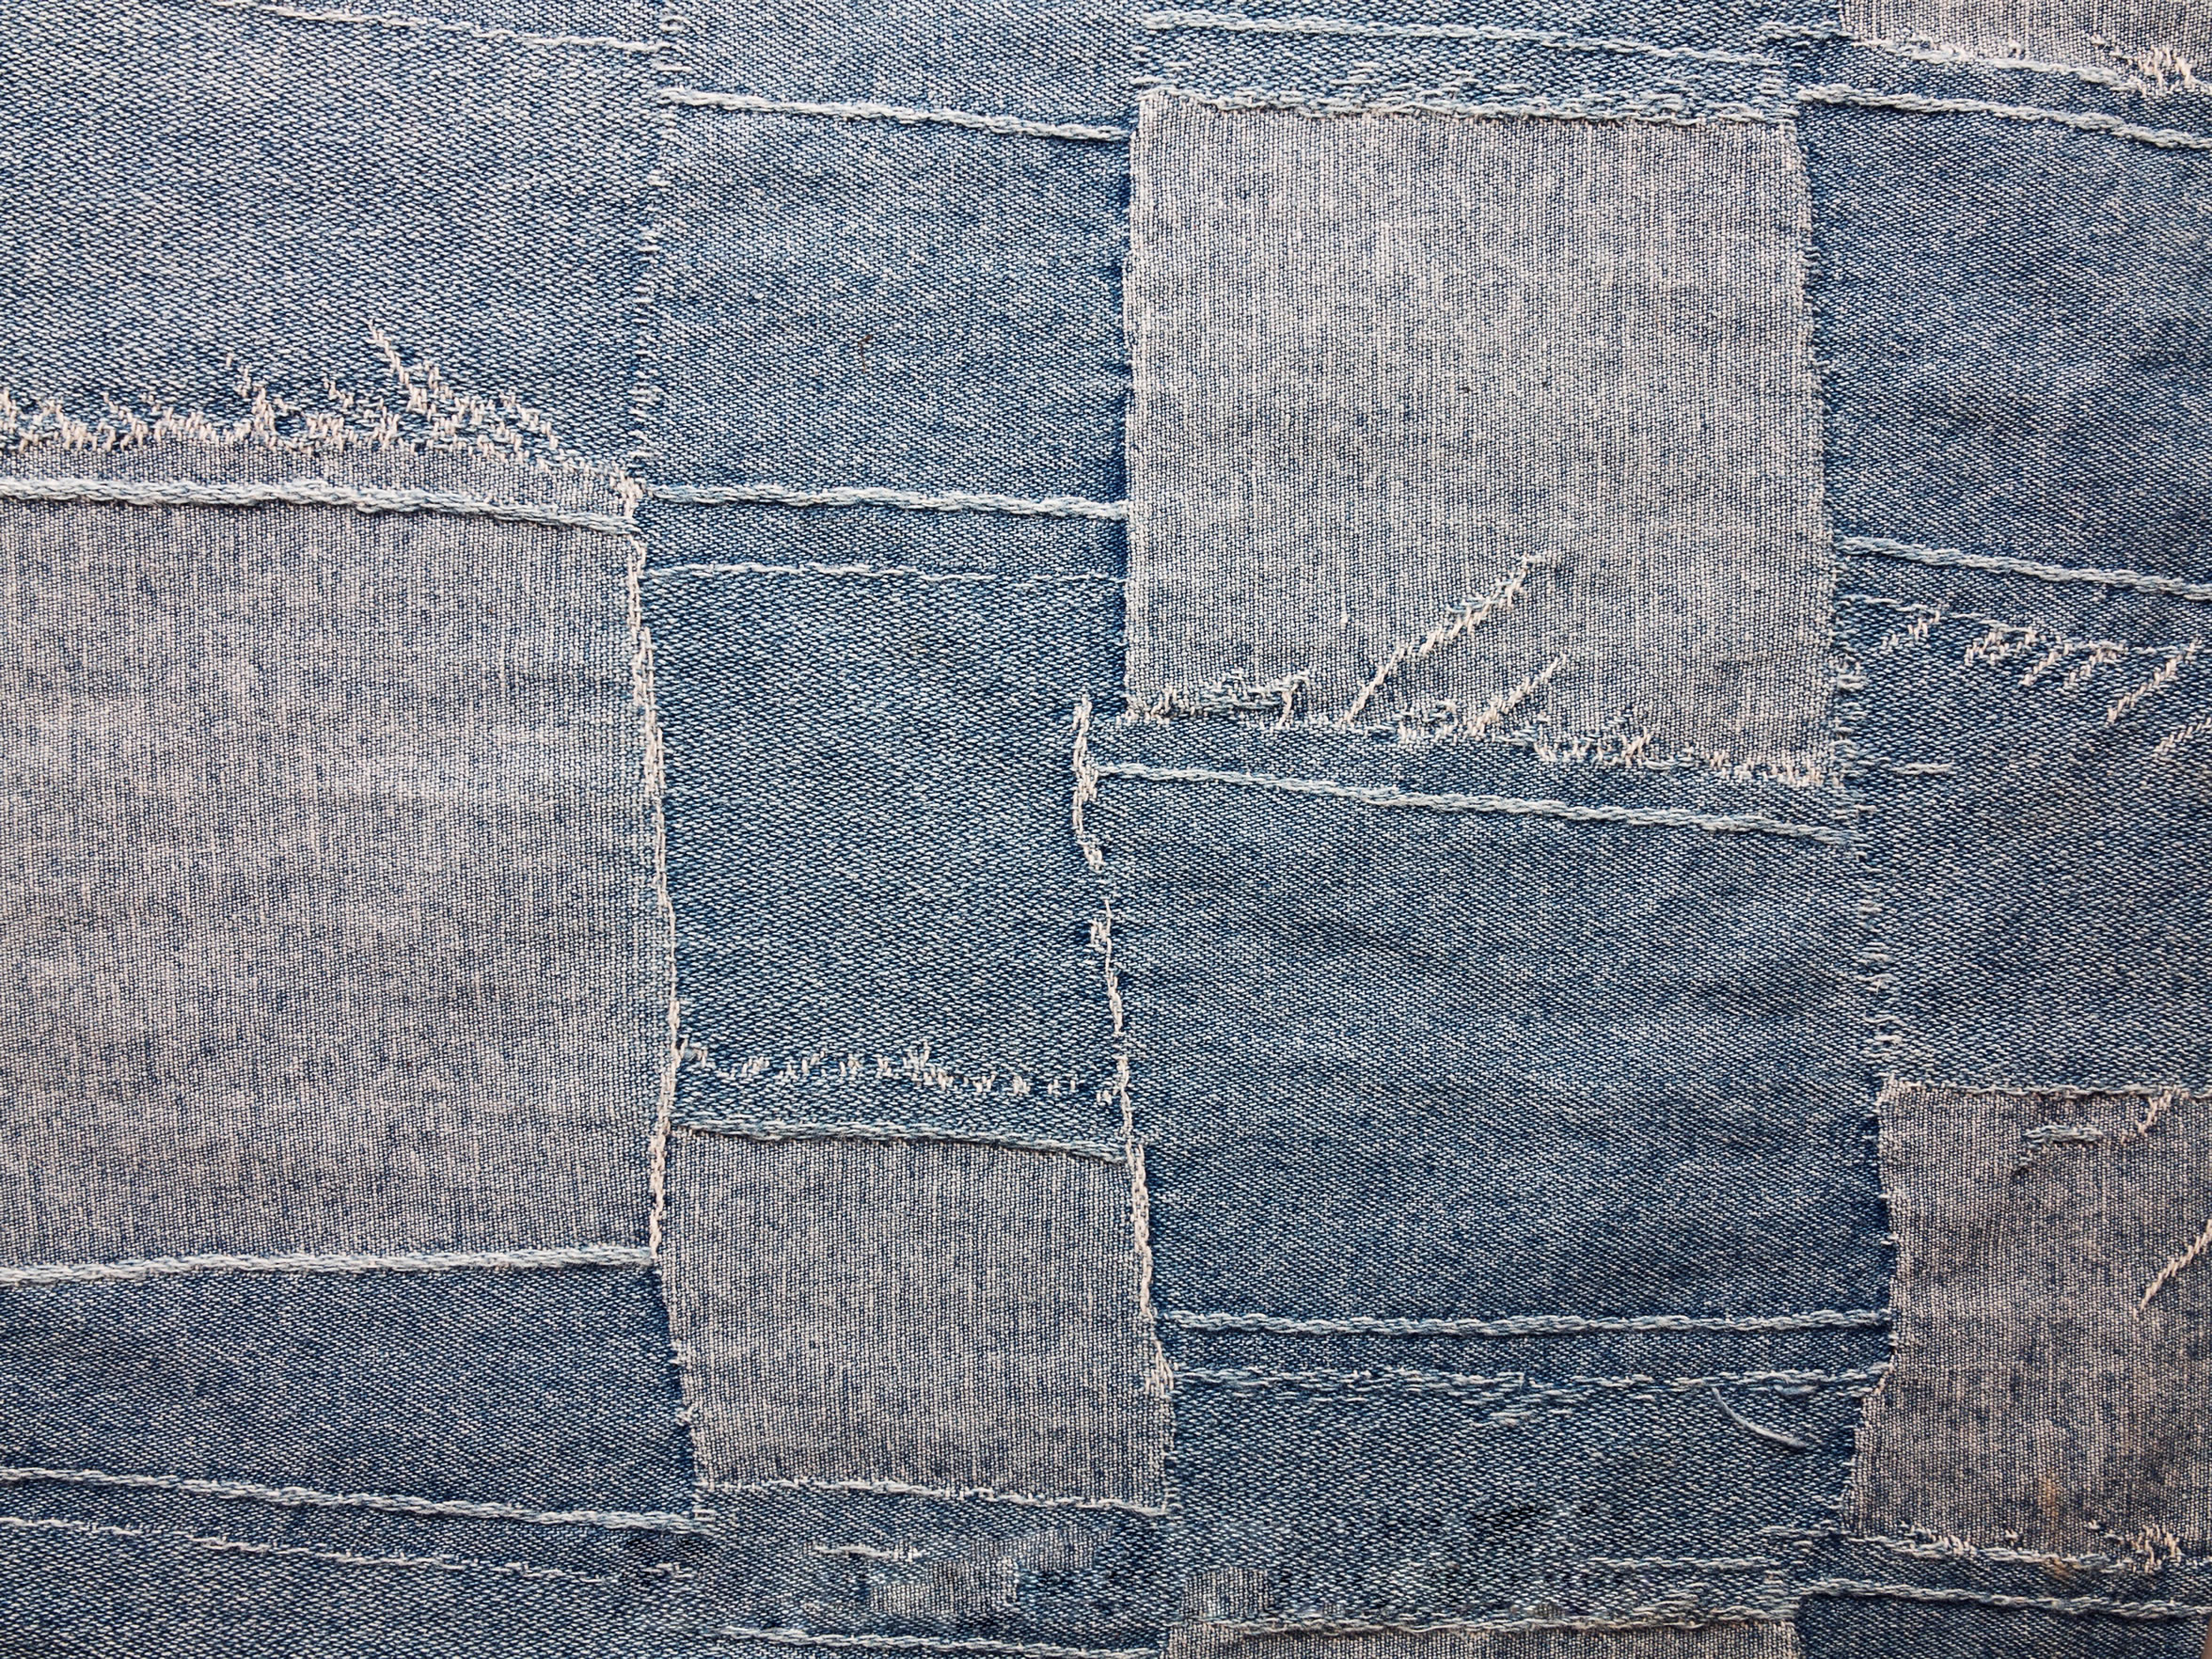 Текстура джинсовой ткани, скачать фото, фон, джинсы, джинса, jeans texture, background